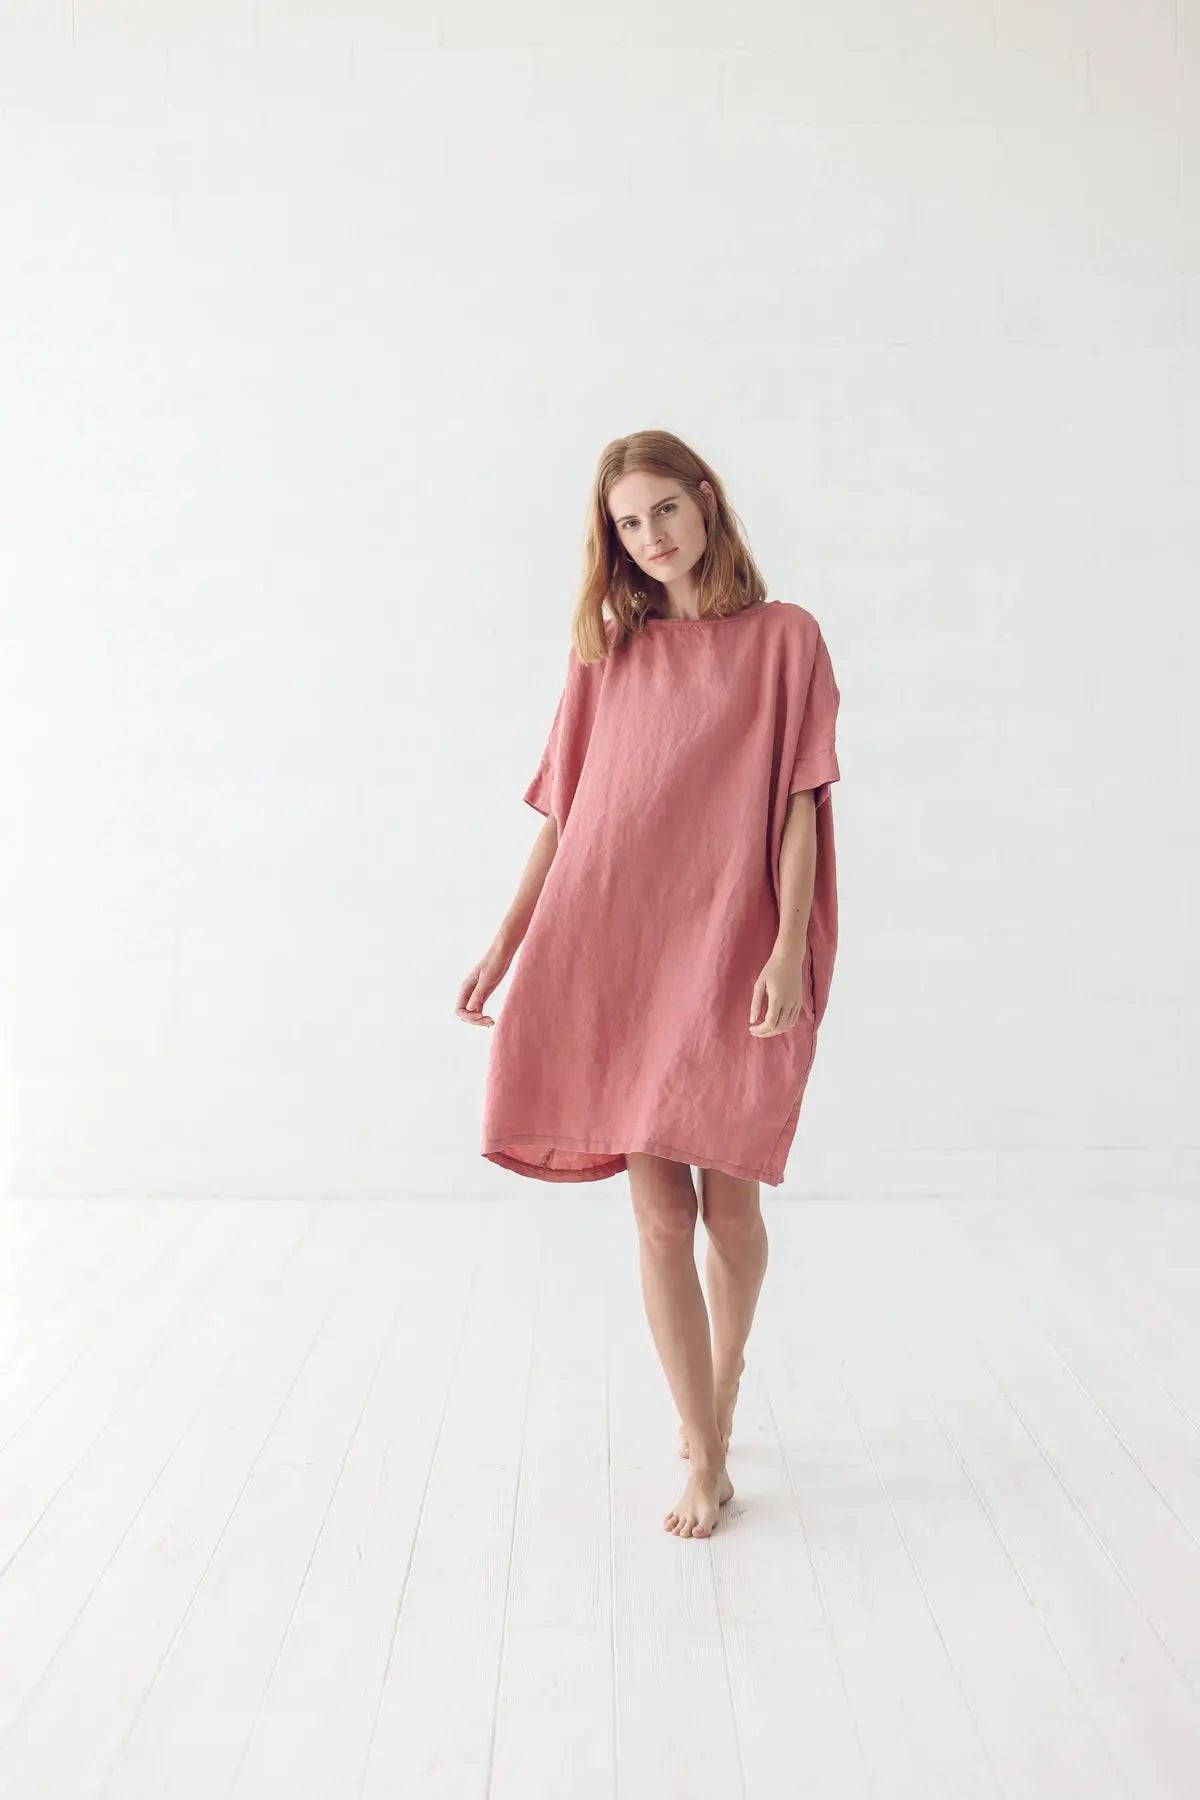 Coral Linen Dress - Epic Linen luxury linen